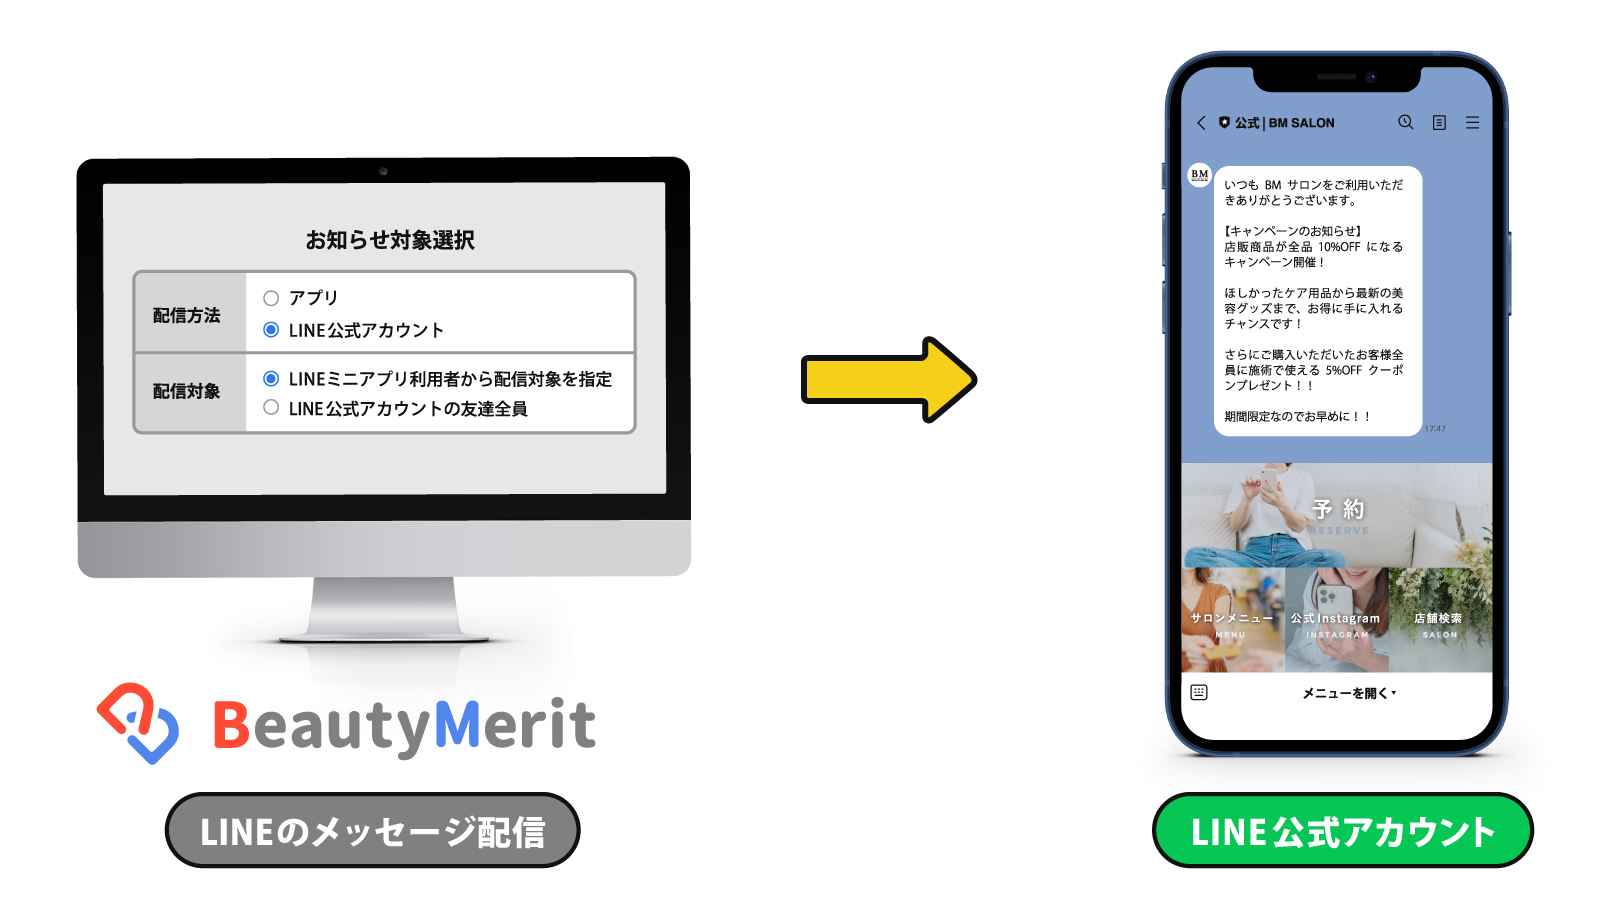 BeautyMerit→LINE公式アカウントメッセージ送信機能